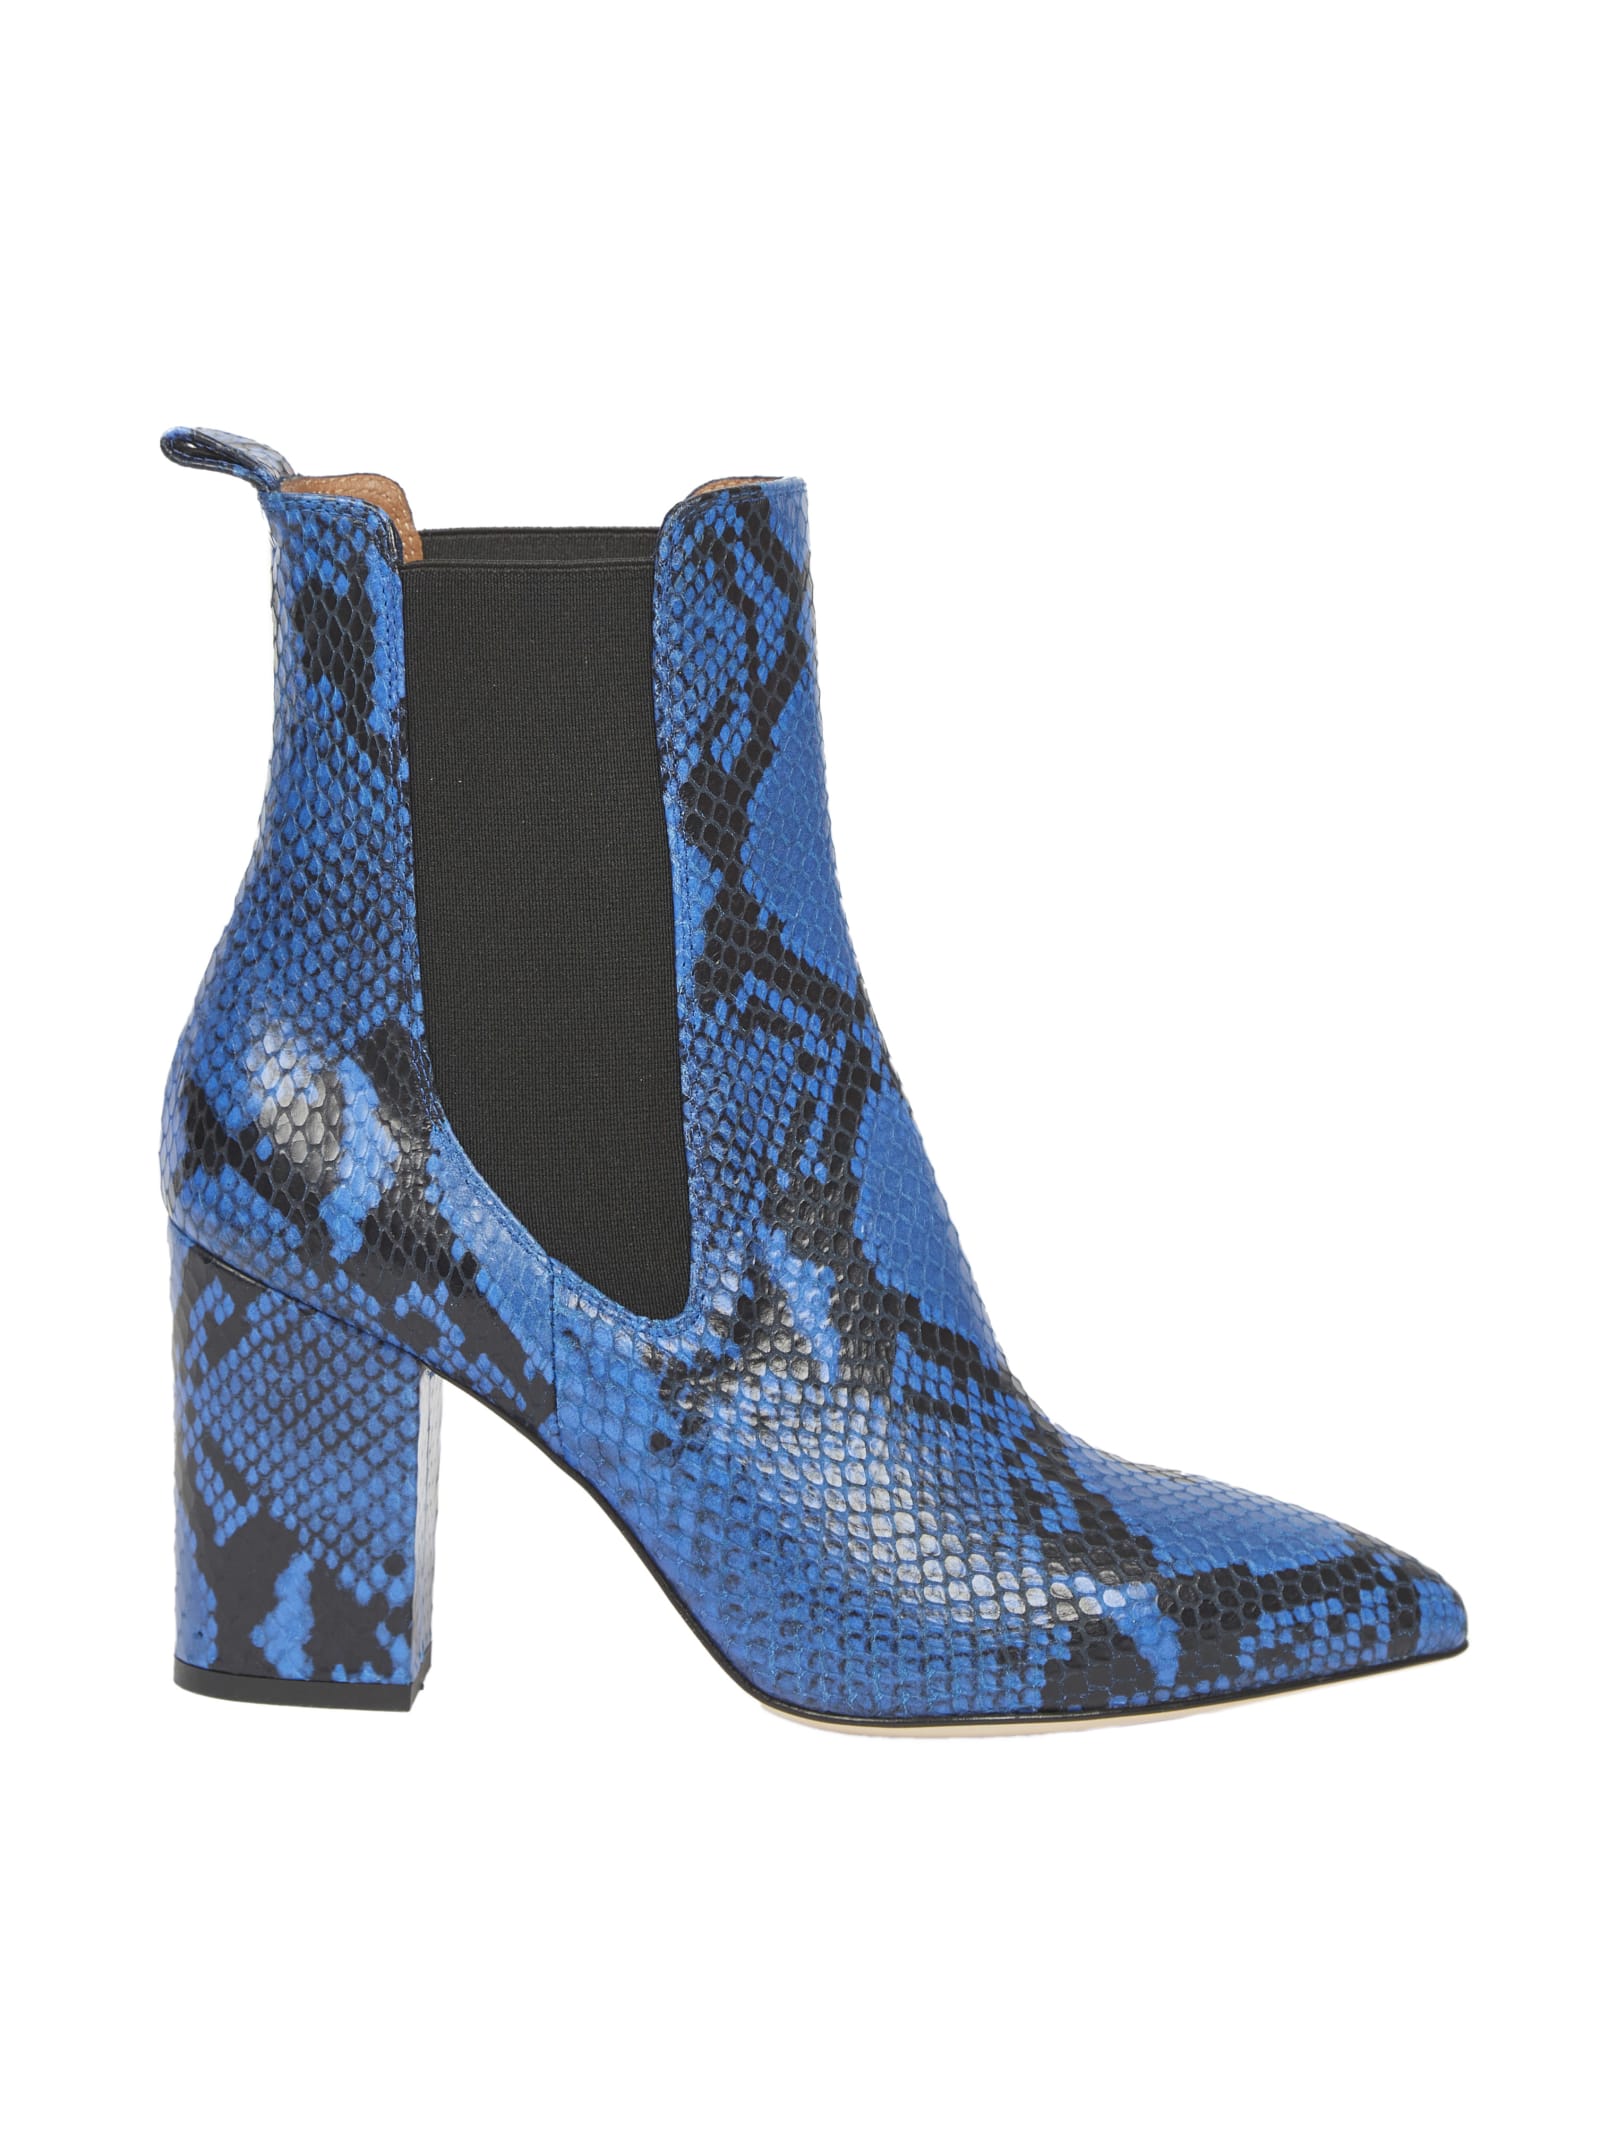 Paris Texas Bluette Ankle Boots